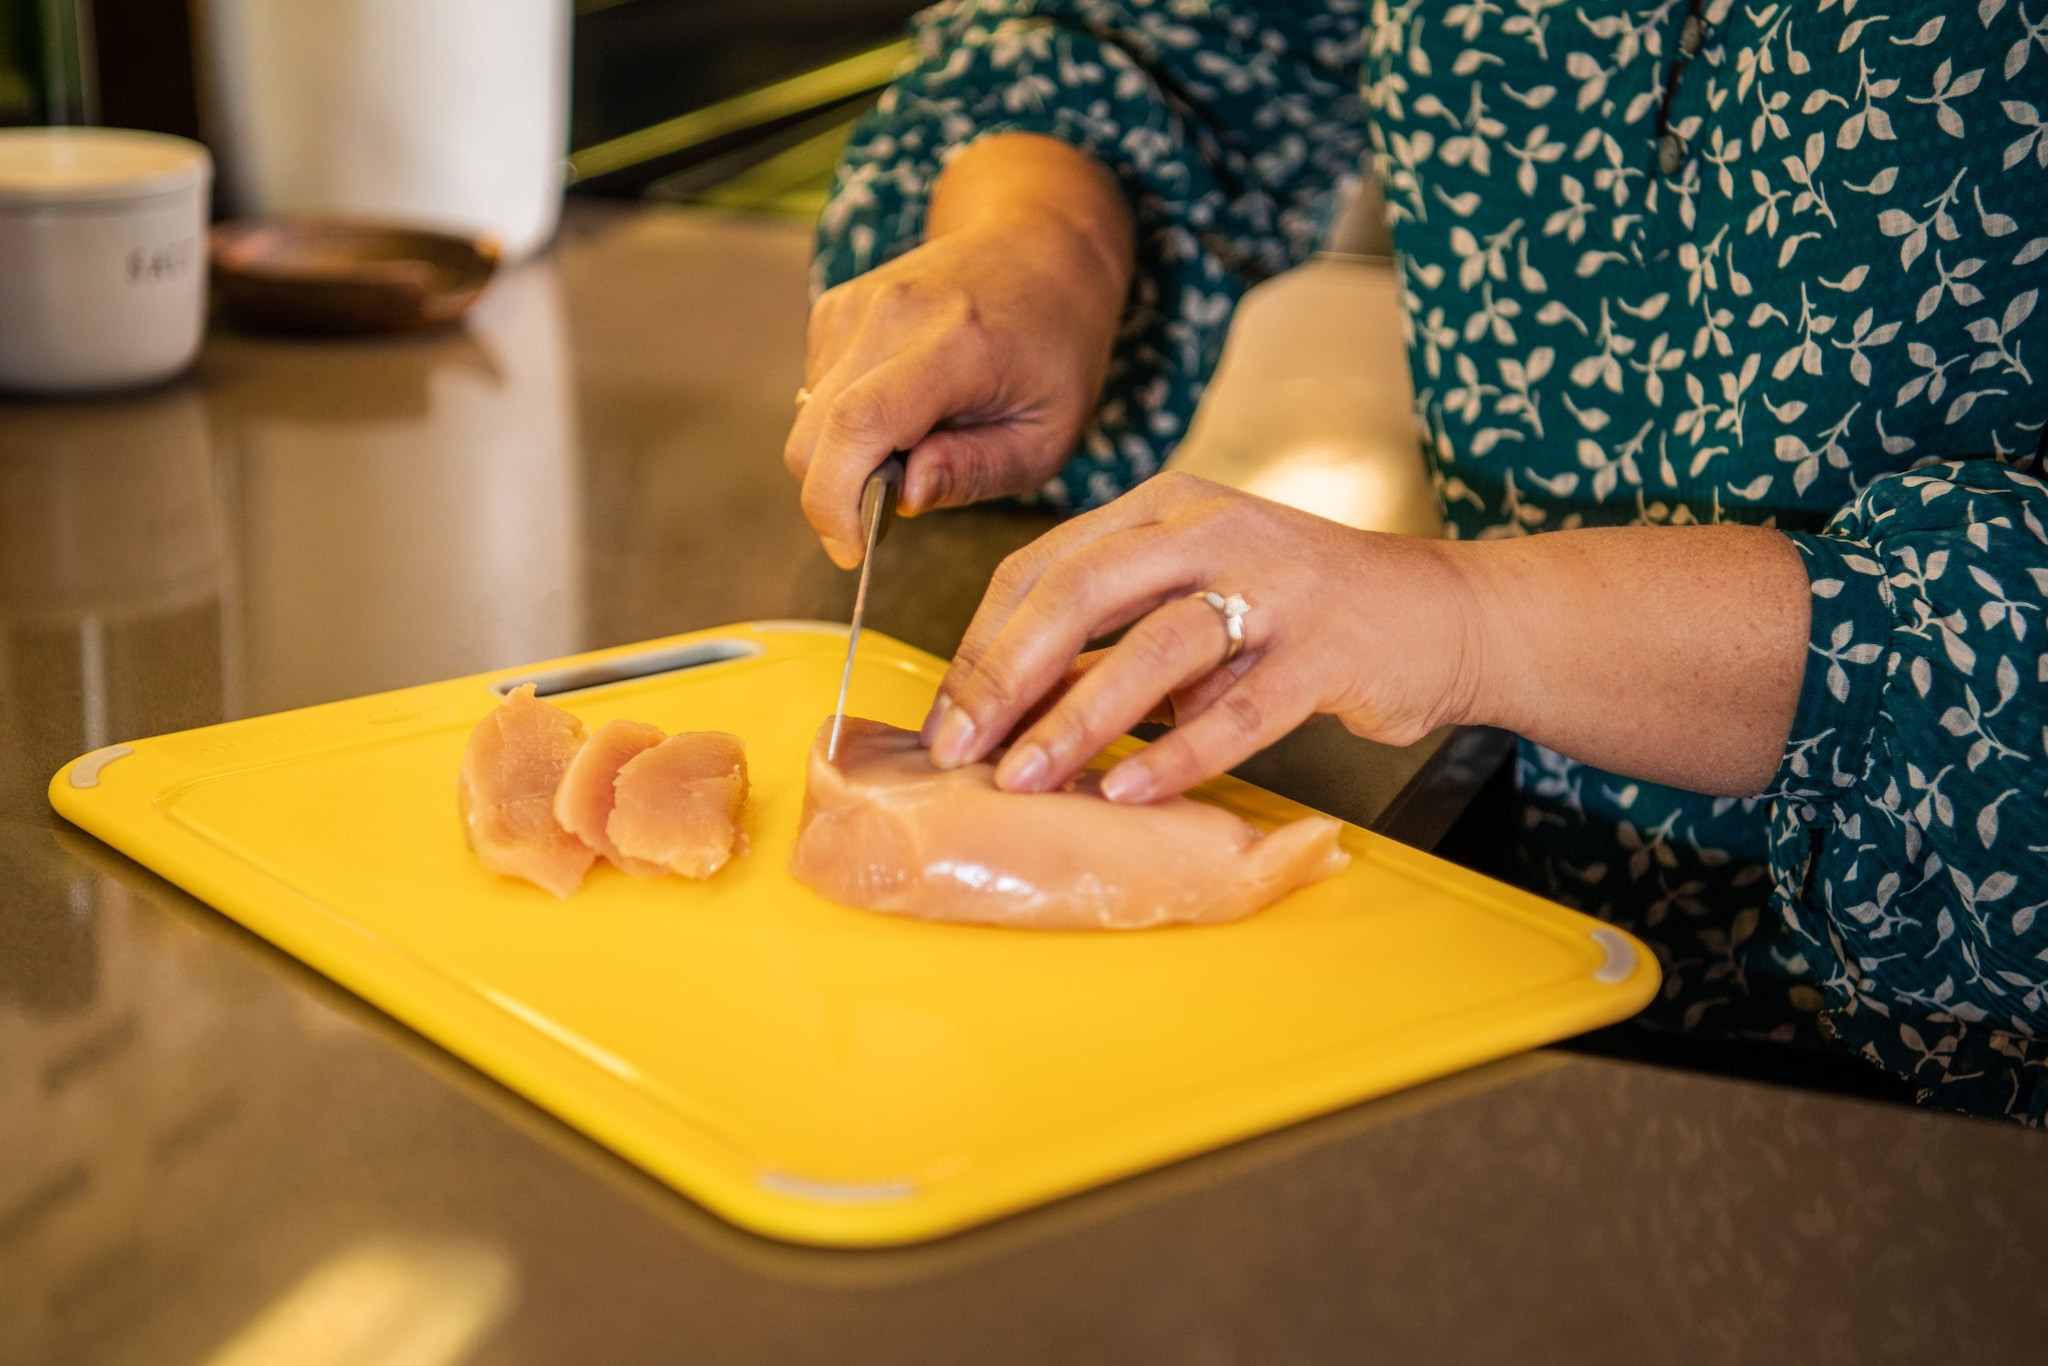 Woman cutting raw chicken on a clean, plastic cutting board.